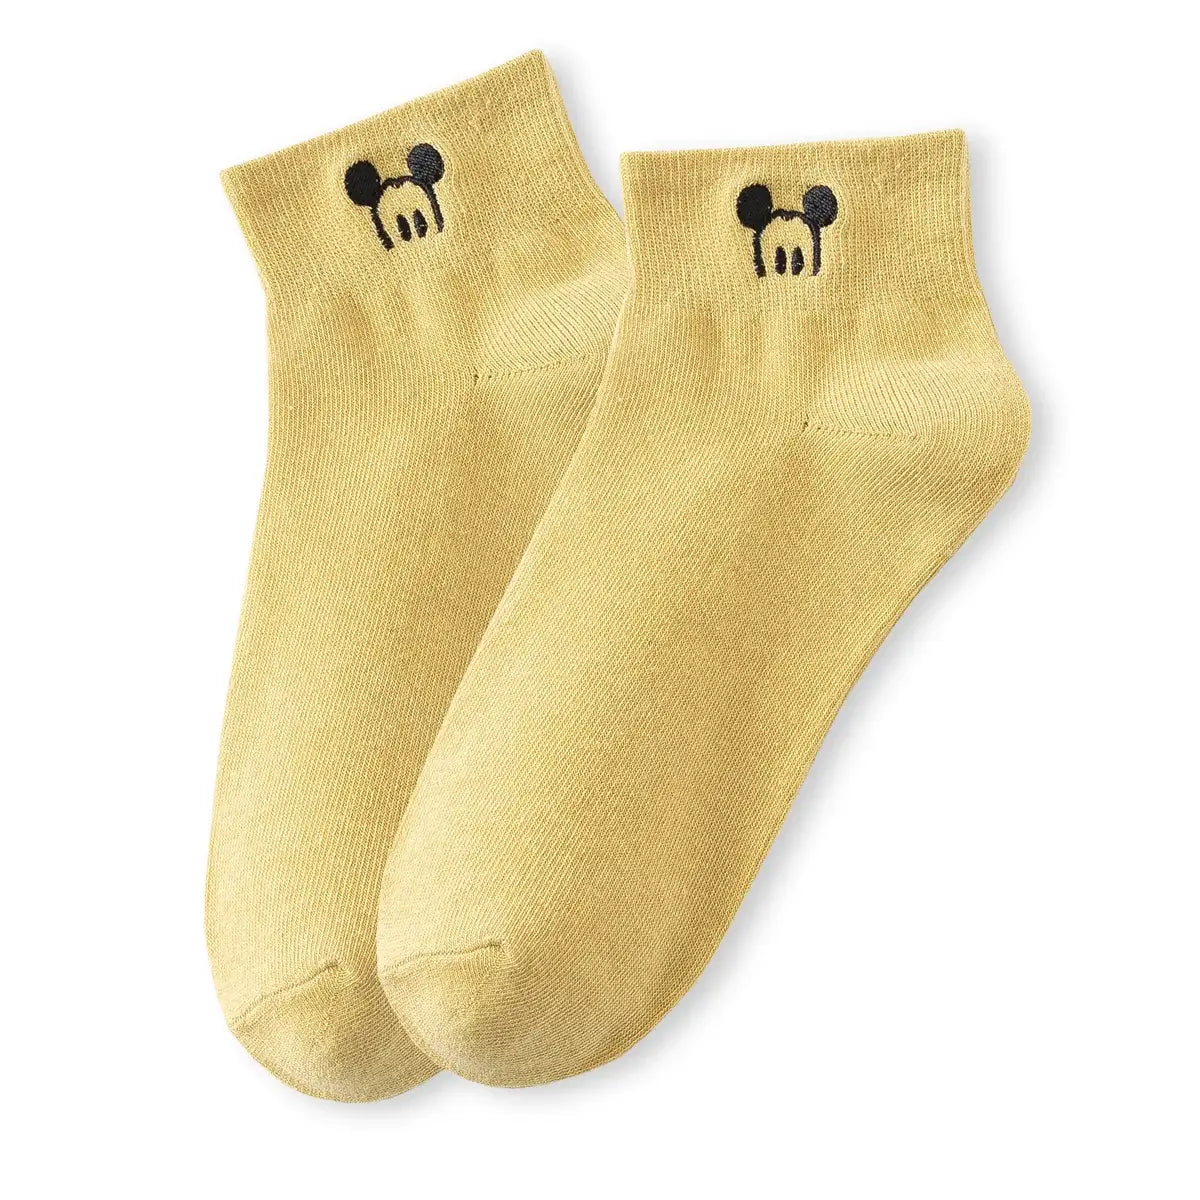 Chaussettes jaune en coton à motif oreille de Mickey pour adultes | Chaussettes douces et confortables | Fabriquées à partir de matériaux de haute qualité | Un cadeau parfait pour les hommes et les femmes de tous âges